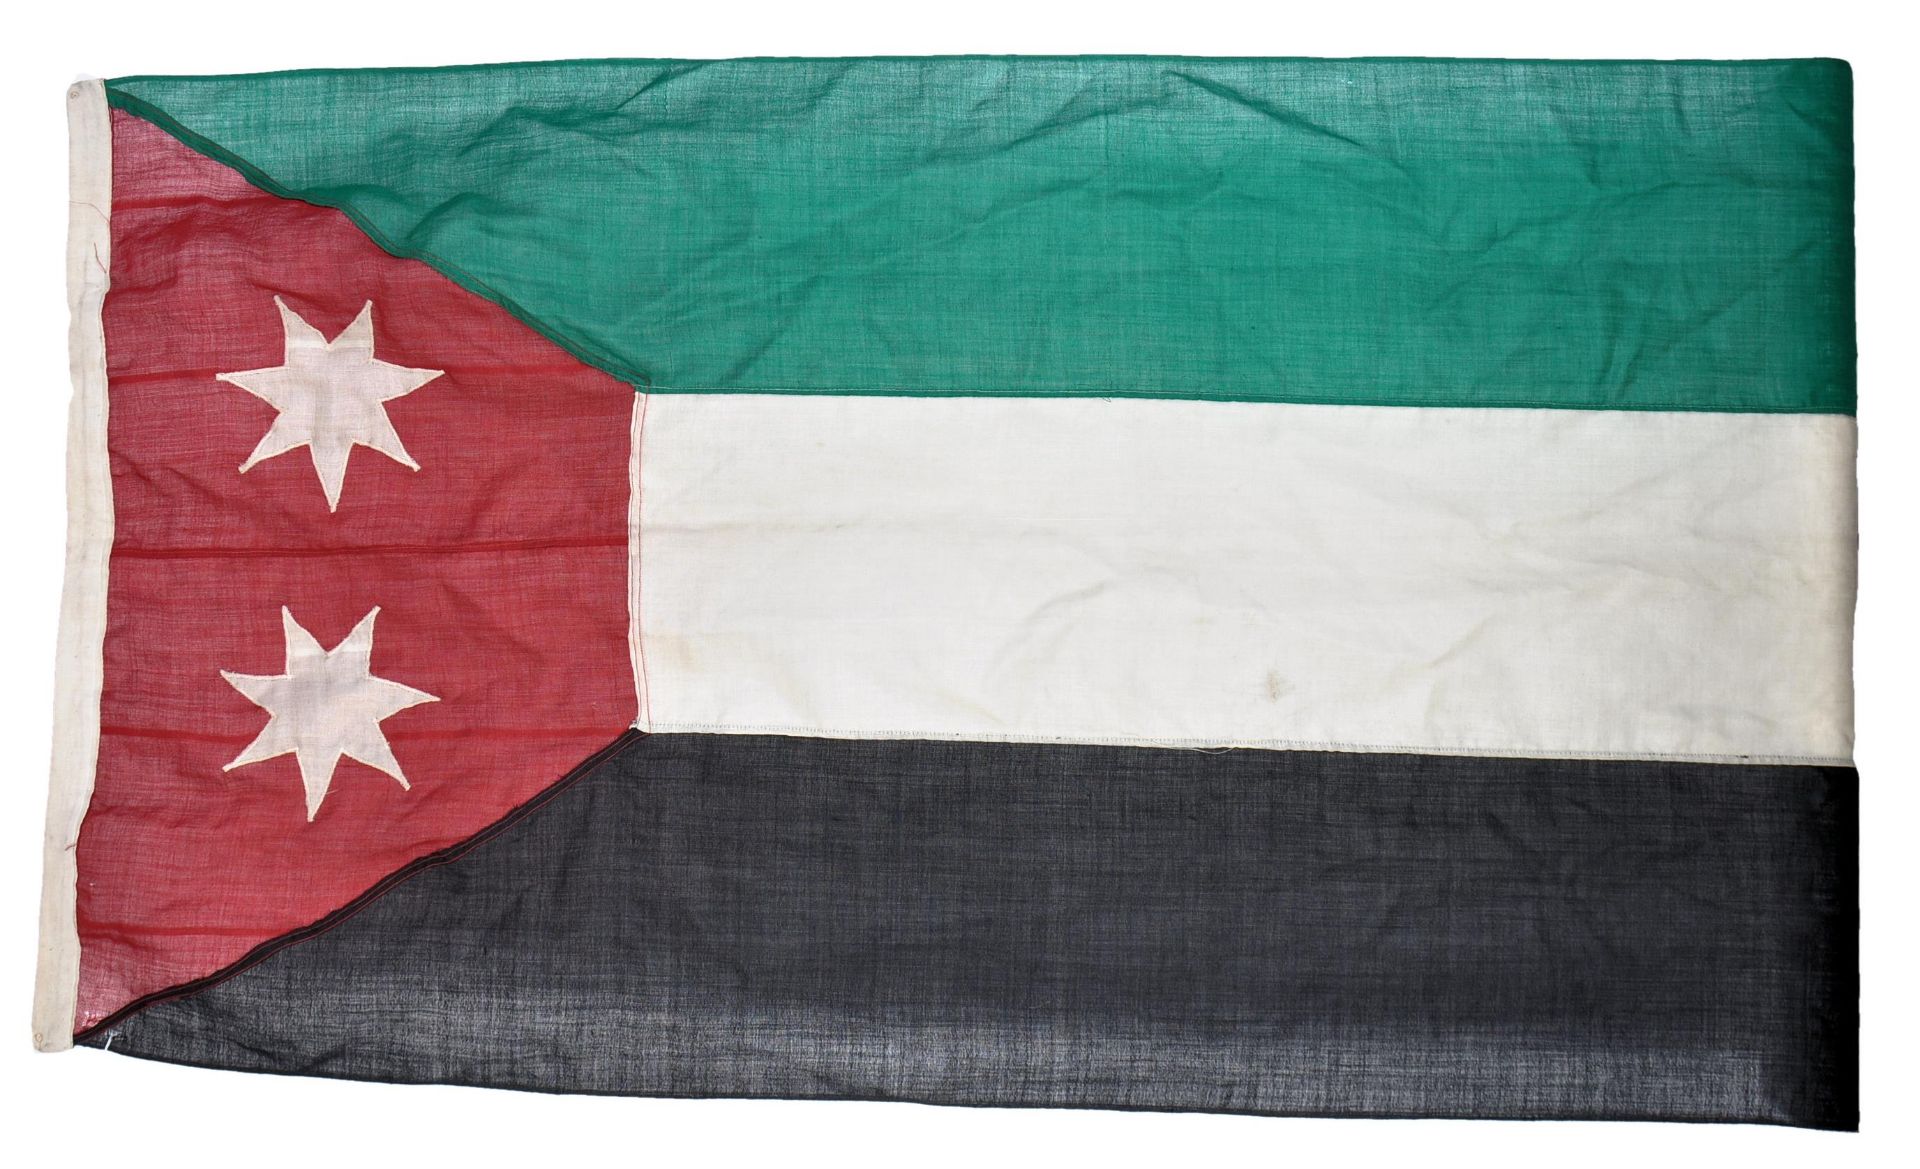 WWII SECOND WORLD WAR PERIOD FLAG OF IRAQ